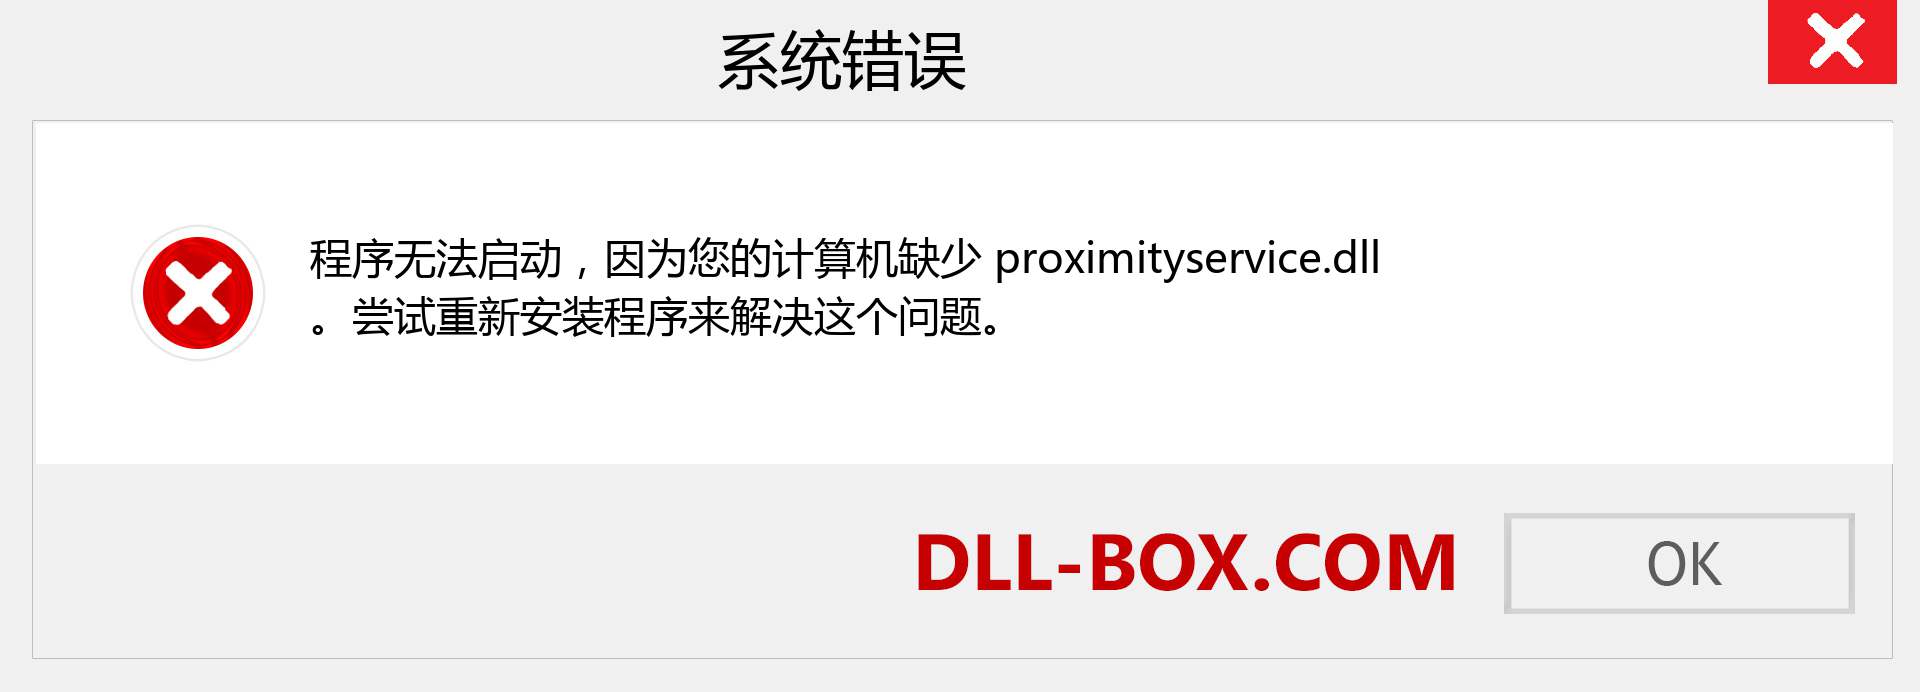 proximityservice.dll 文件丢失？。 适用于 Windows 7、8、10 的下载 - 修复 Windows、照片、图像上的 proximityservice dll 丢失错误